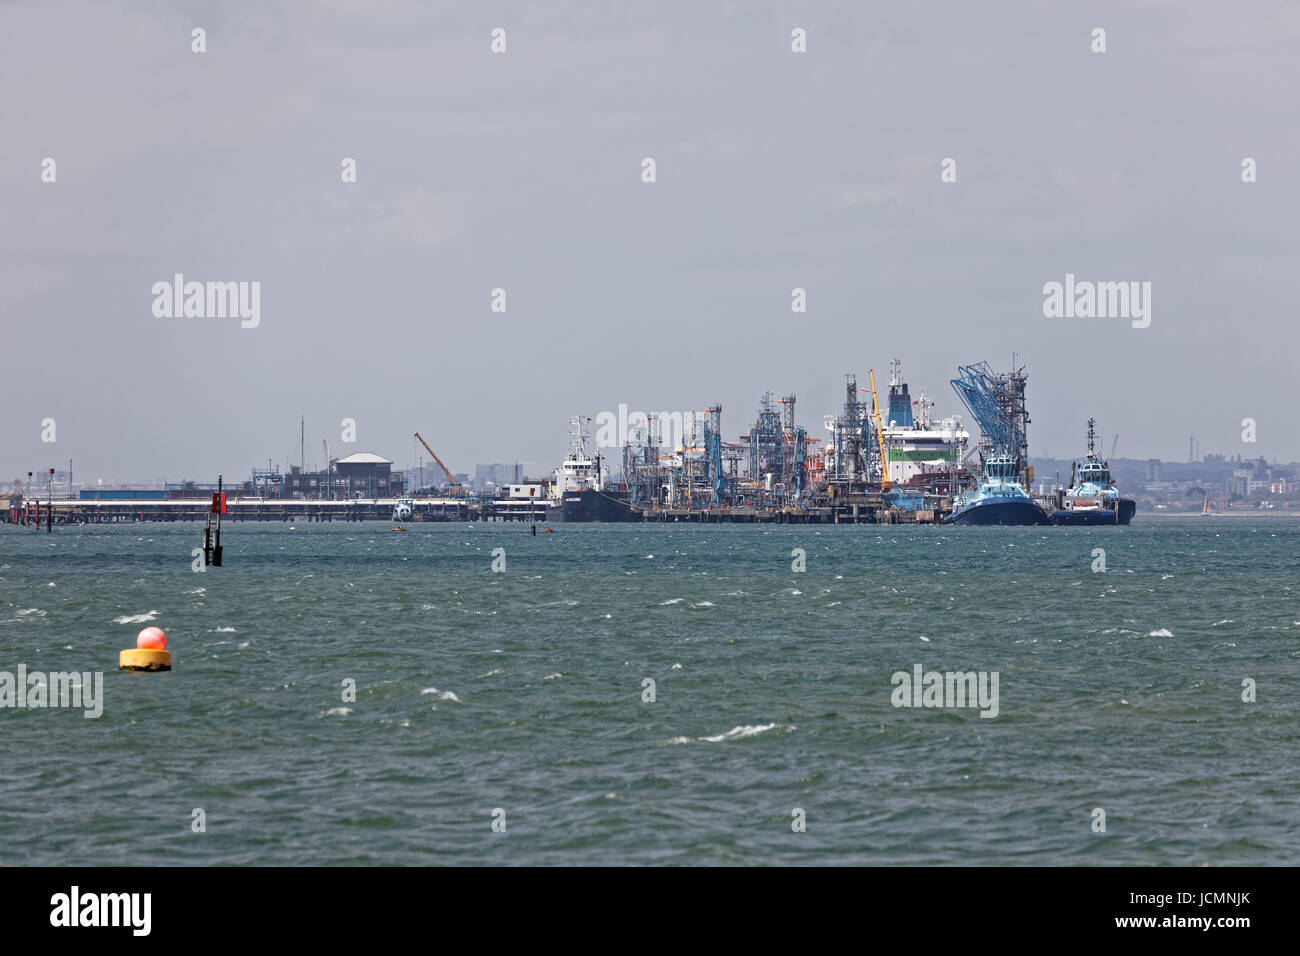 Südlichen Aspekt der UKs größte Raffinerie - Fawley Raffinerie marine Terminal mit Tankern und Schlepper Stockfoto